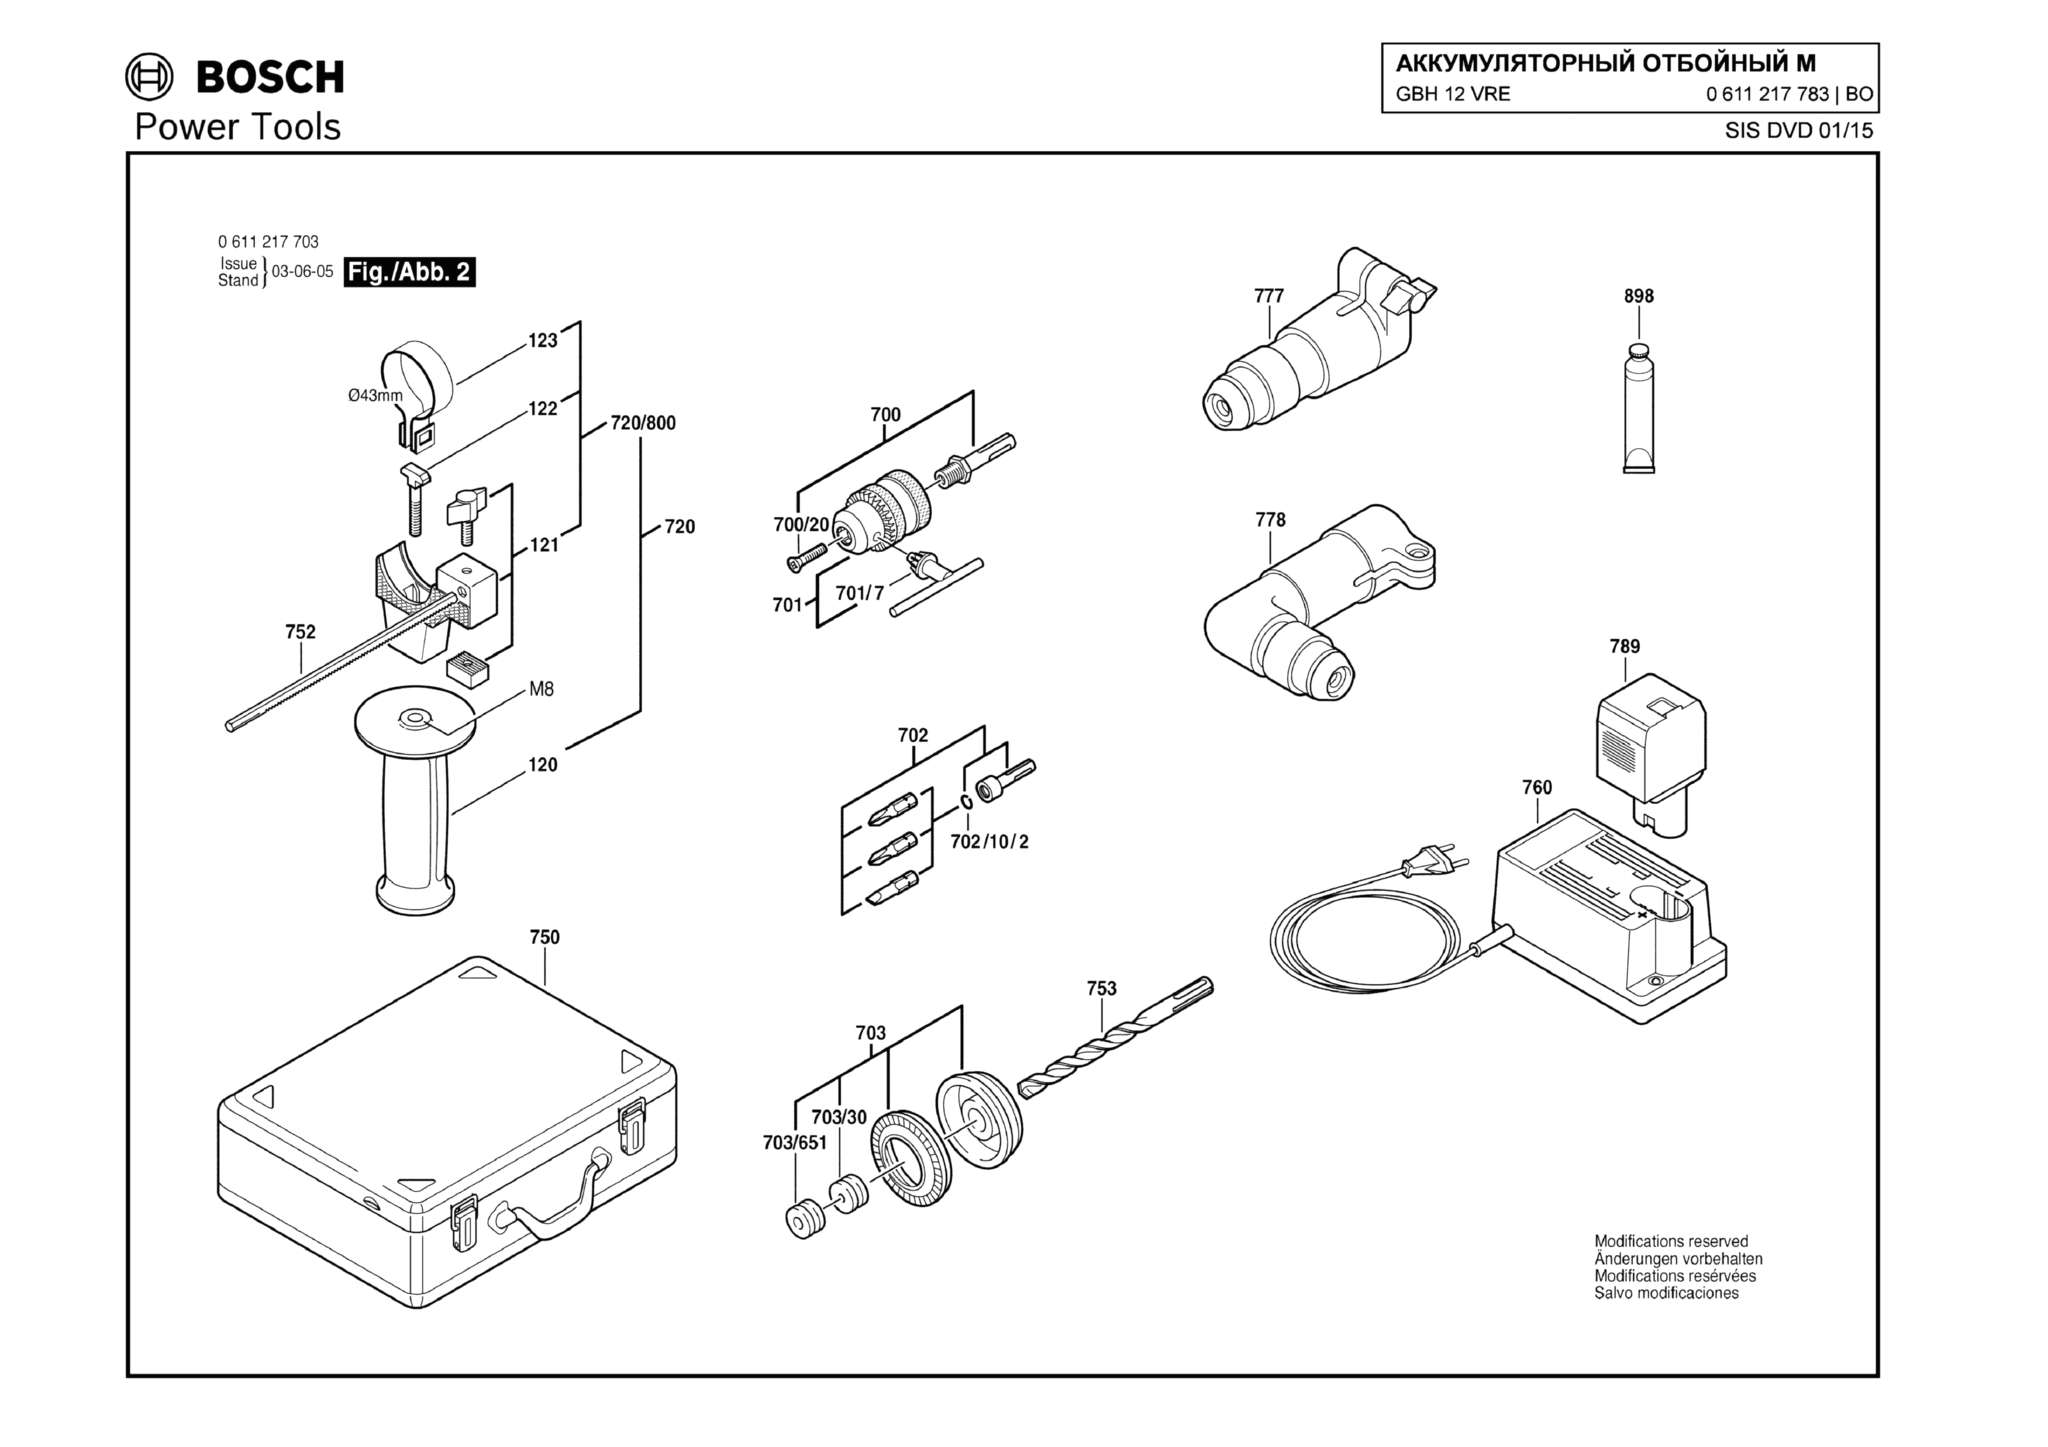 Запчасти, схема и деталировка Bosch GBH 12 VRE (ТИП 0611217783) (ЧАСТЬ 2)